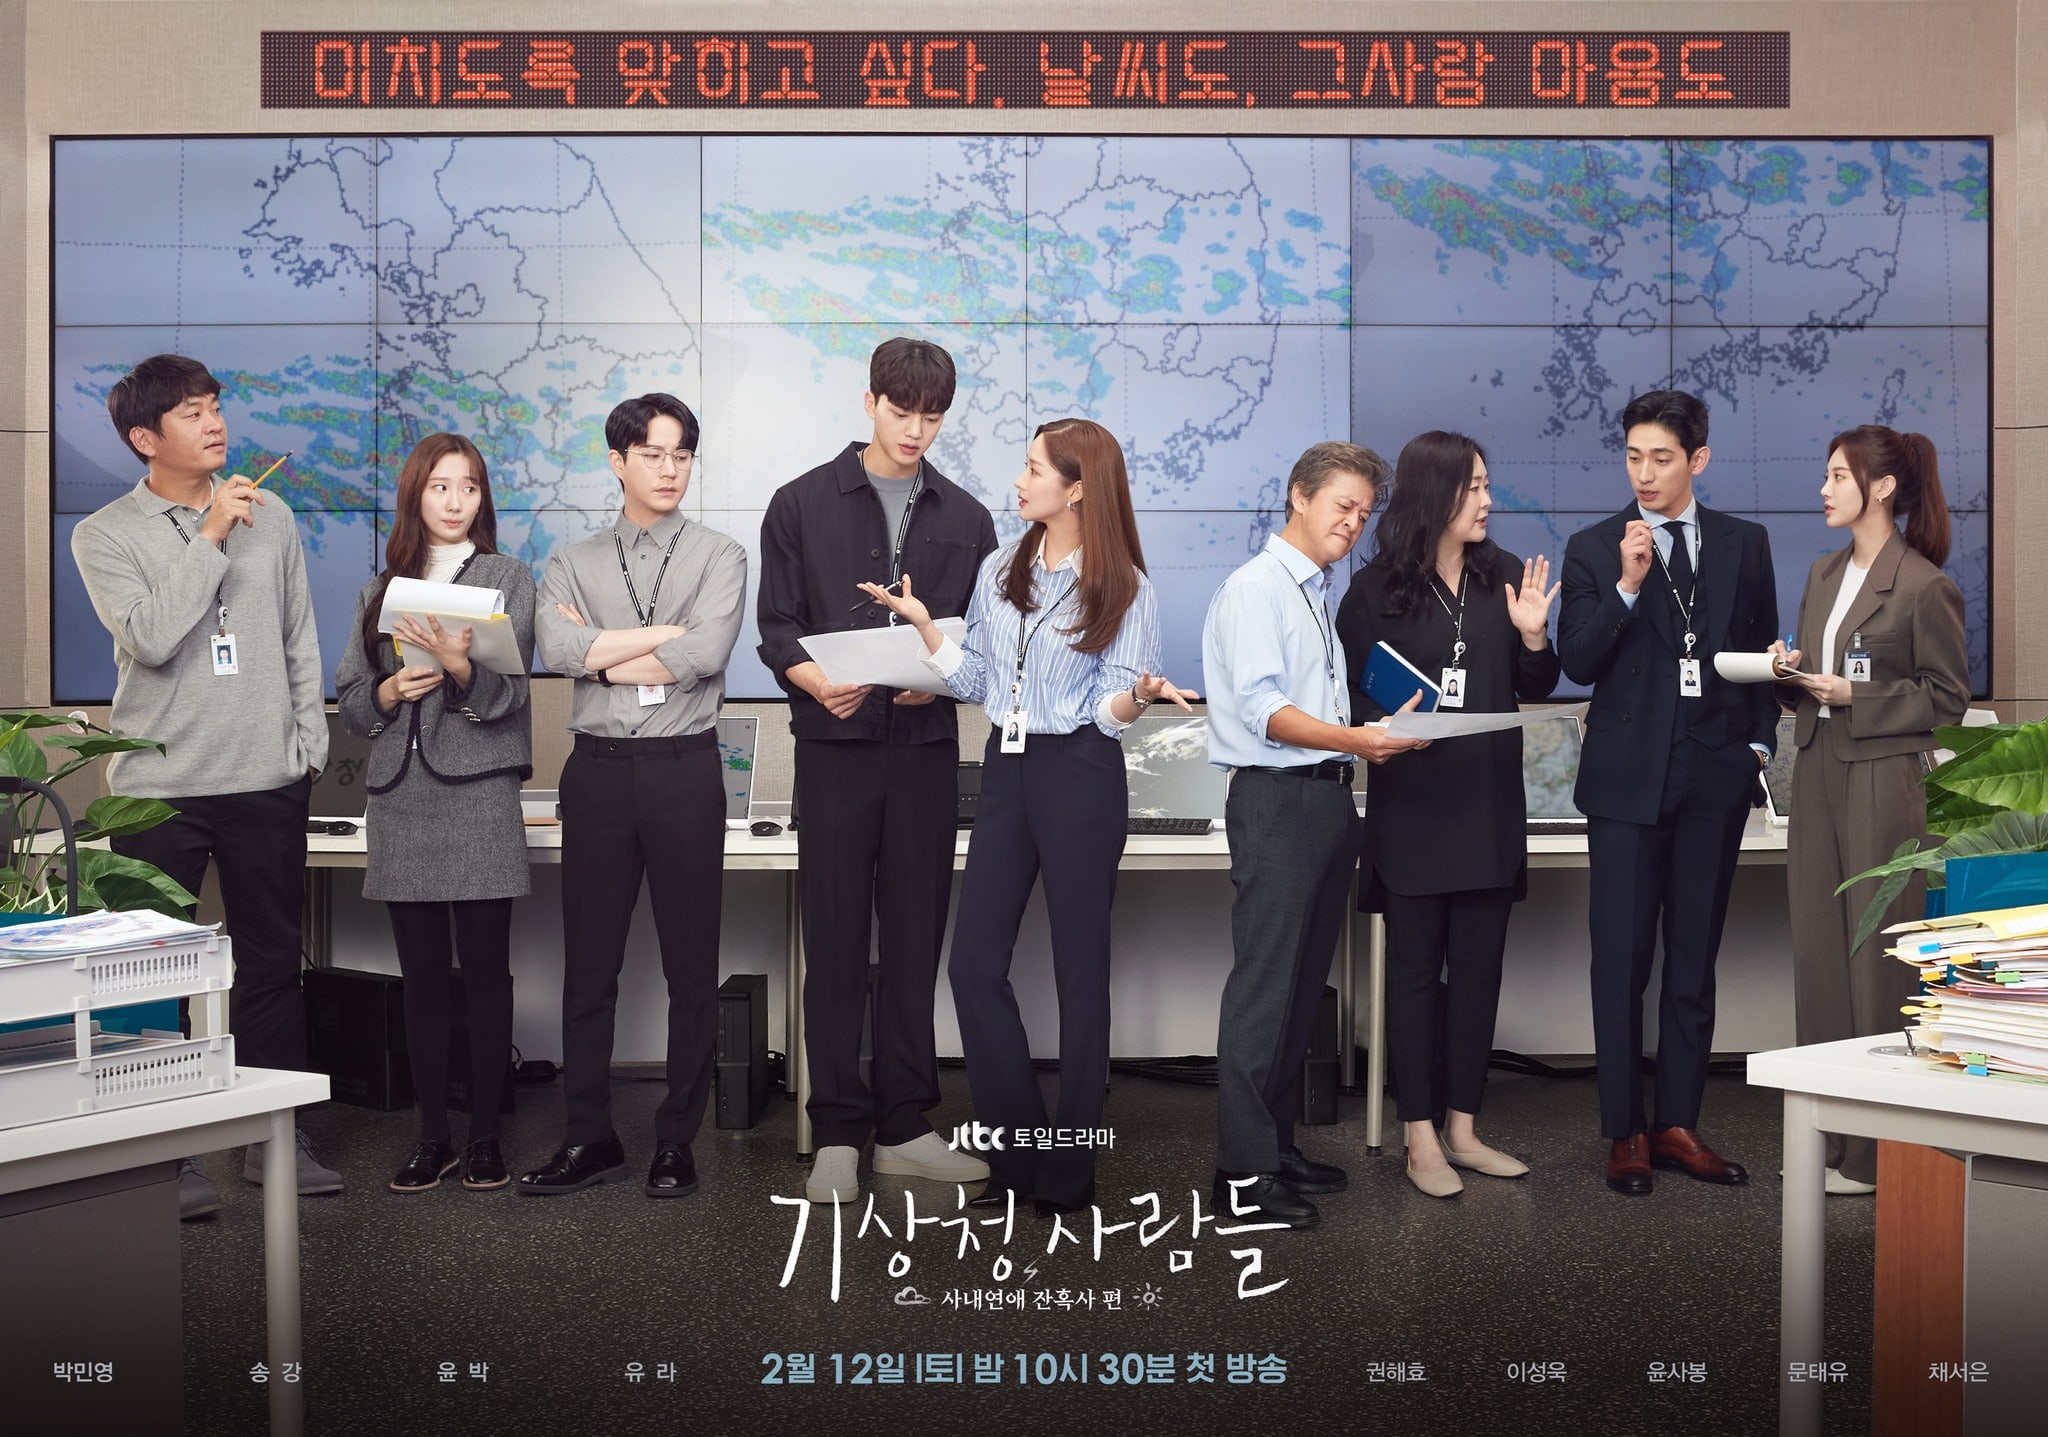 Forecasting Love and Weather: ¿qué nos depara el drama de Song Kang y Park Min Young?